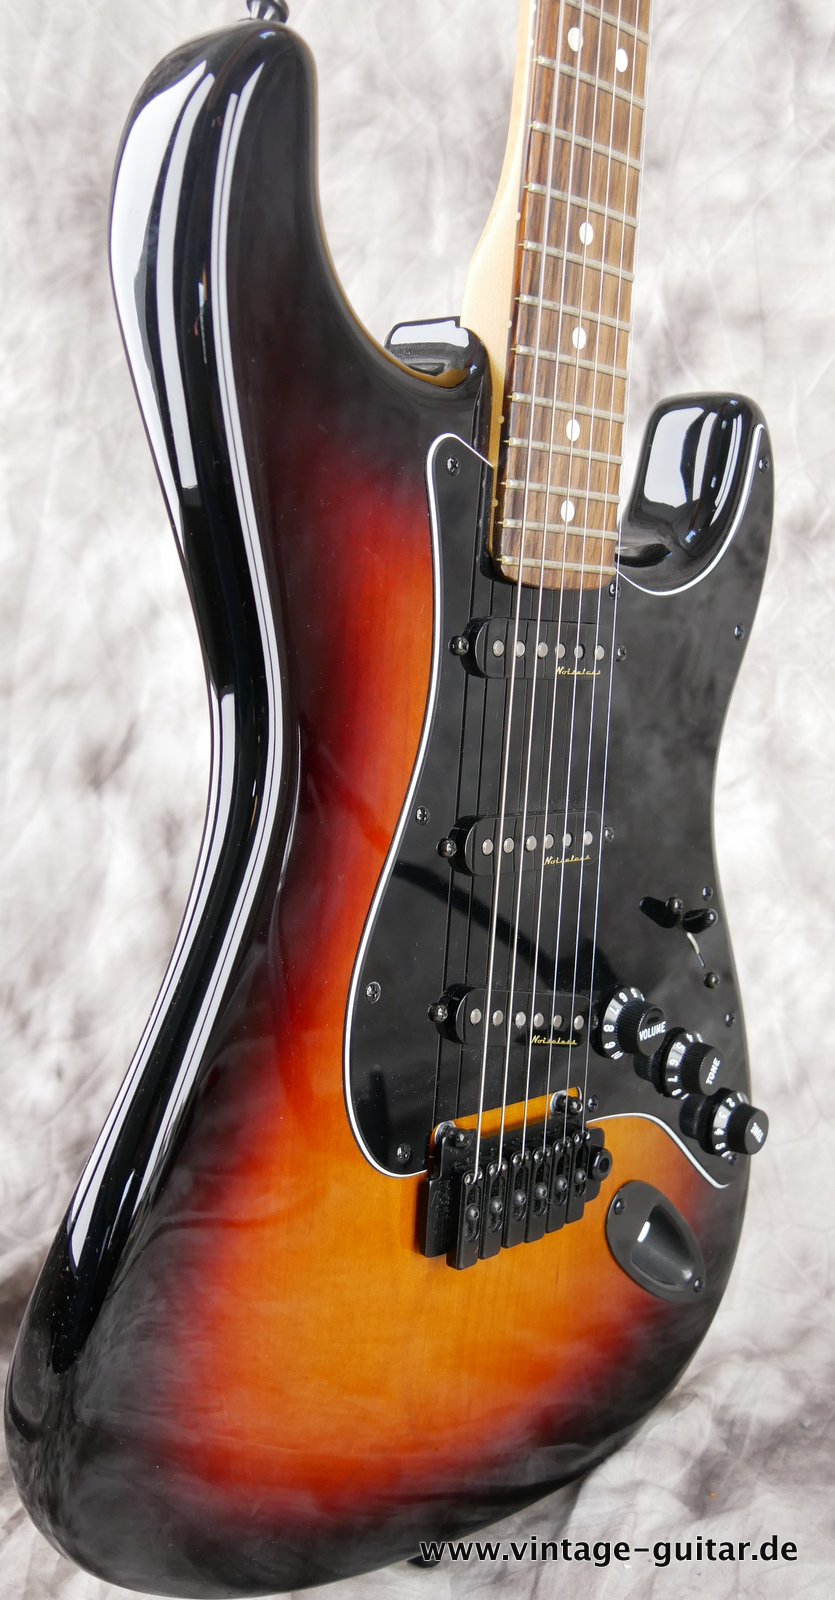 Fender-Stratocaster-2014-US-Standard-black-hardware-005.JPG